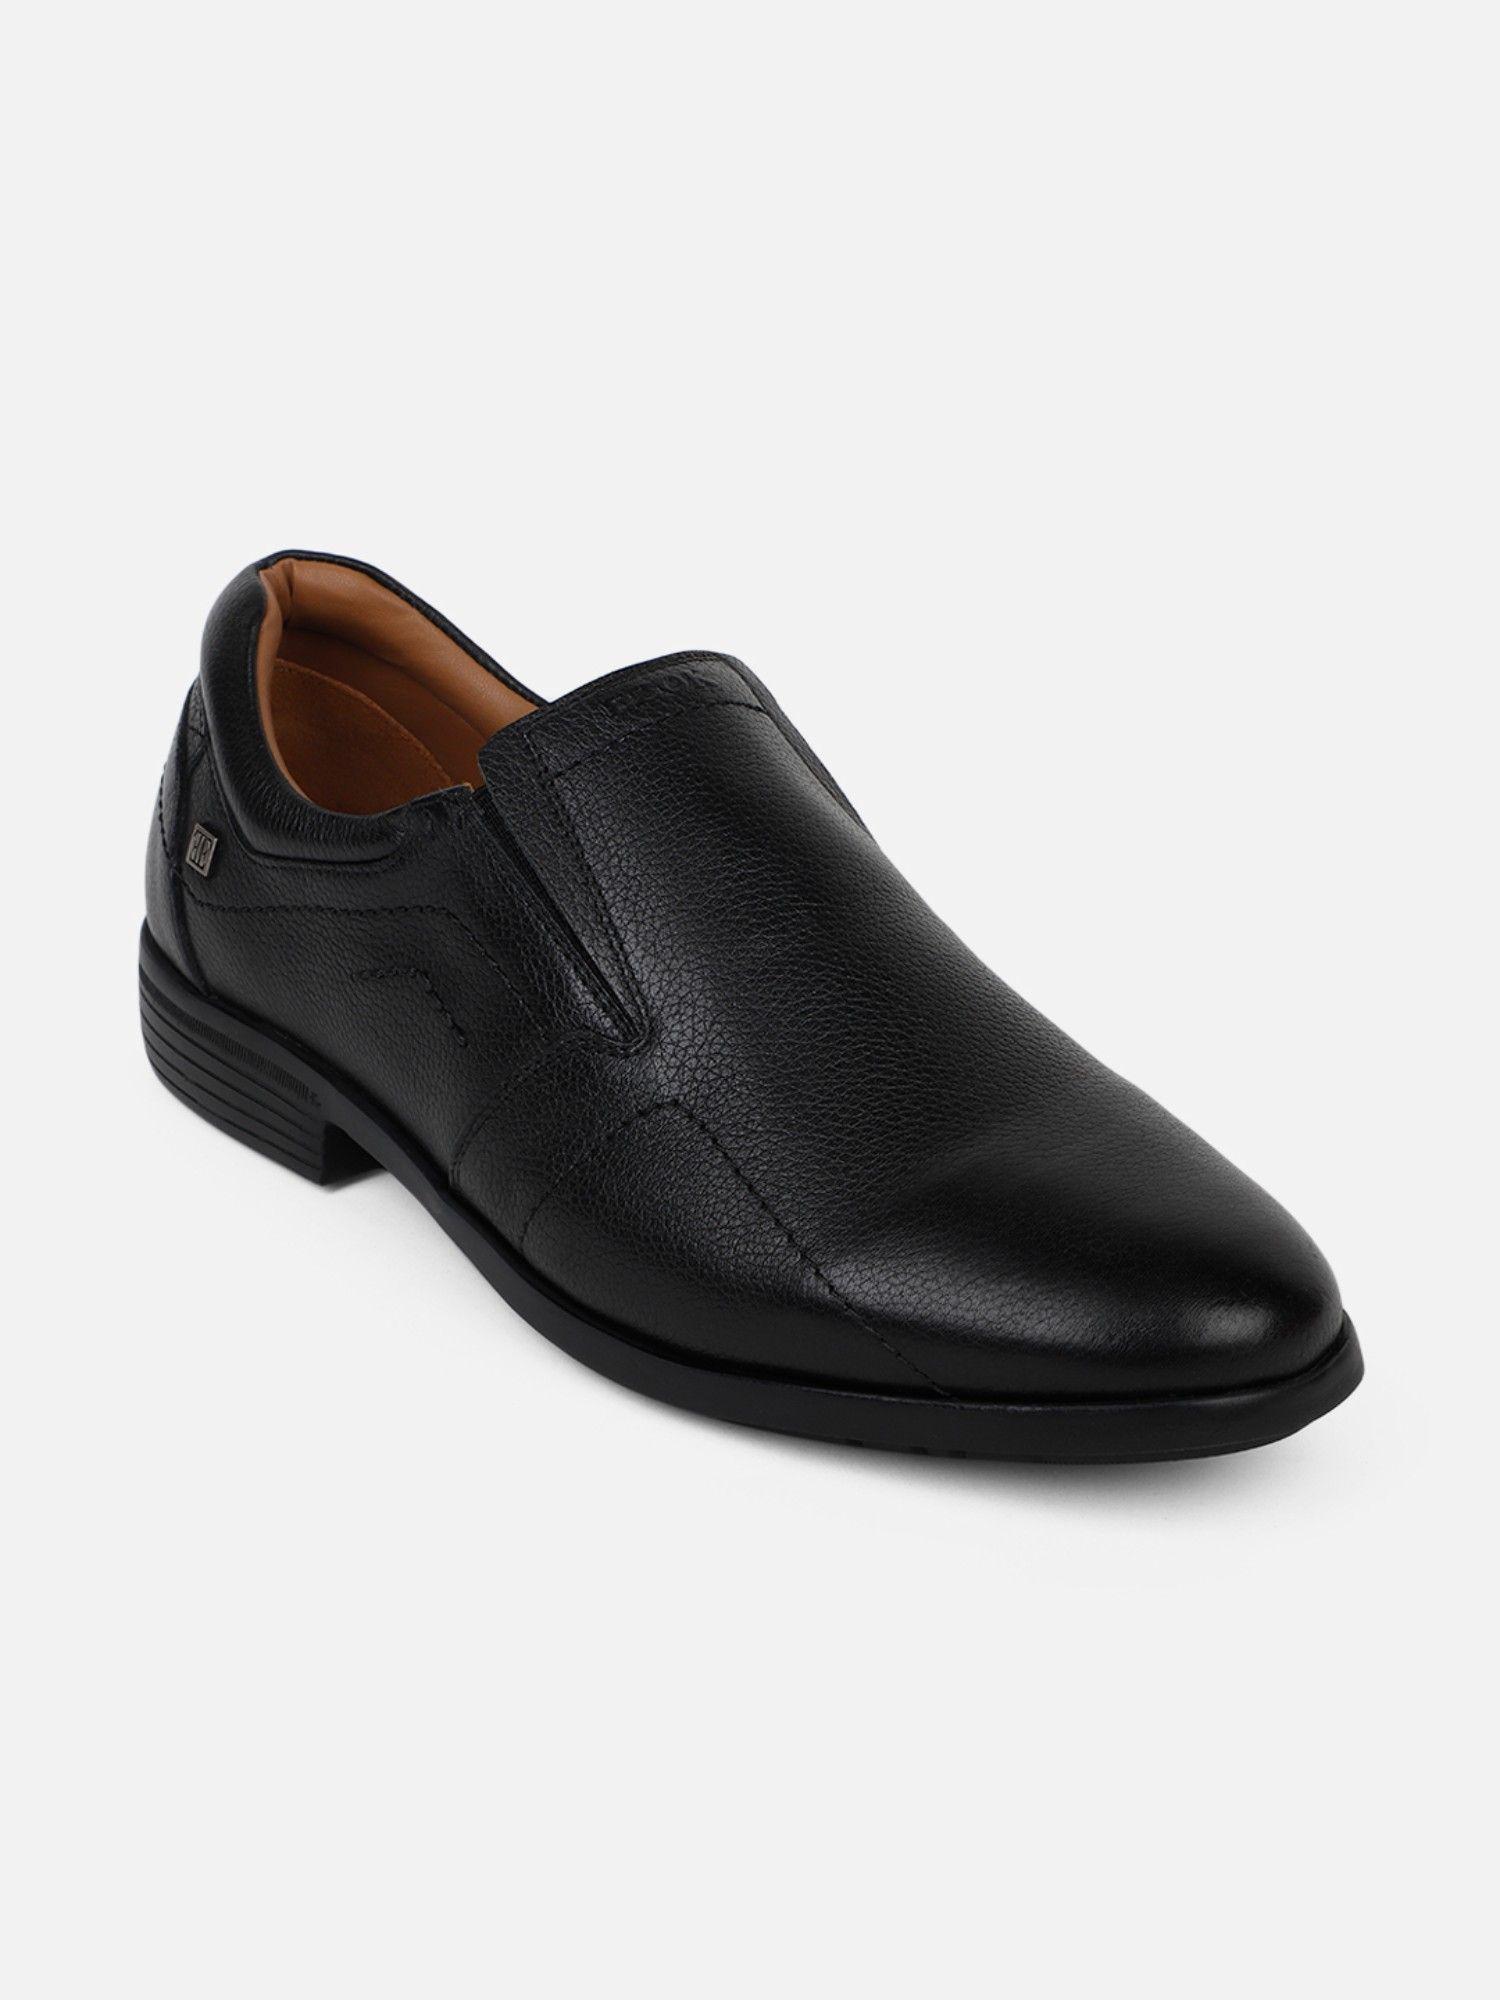 men leather formal shoes black